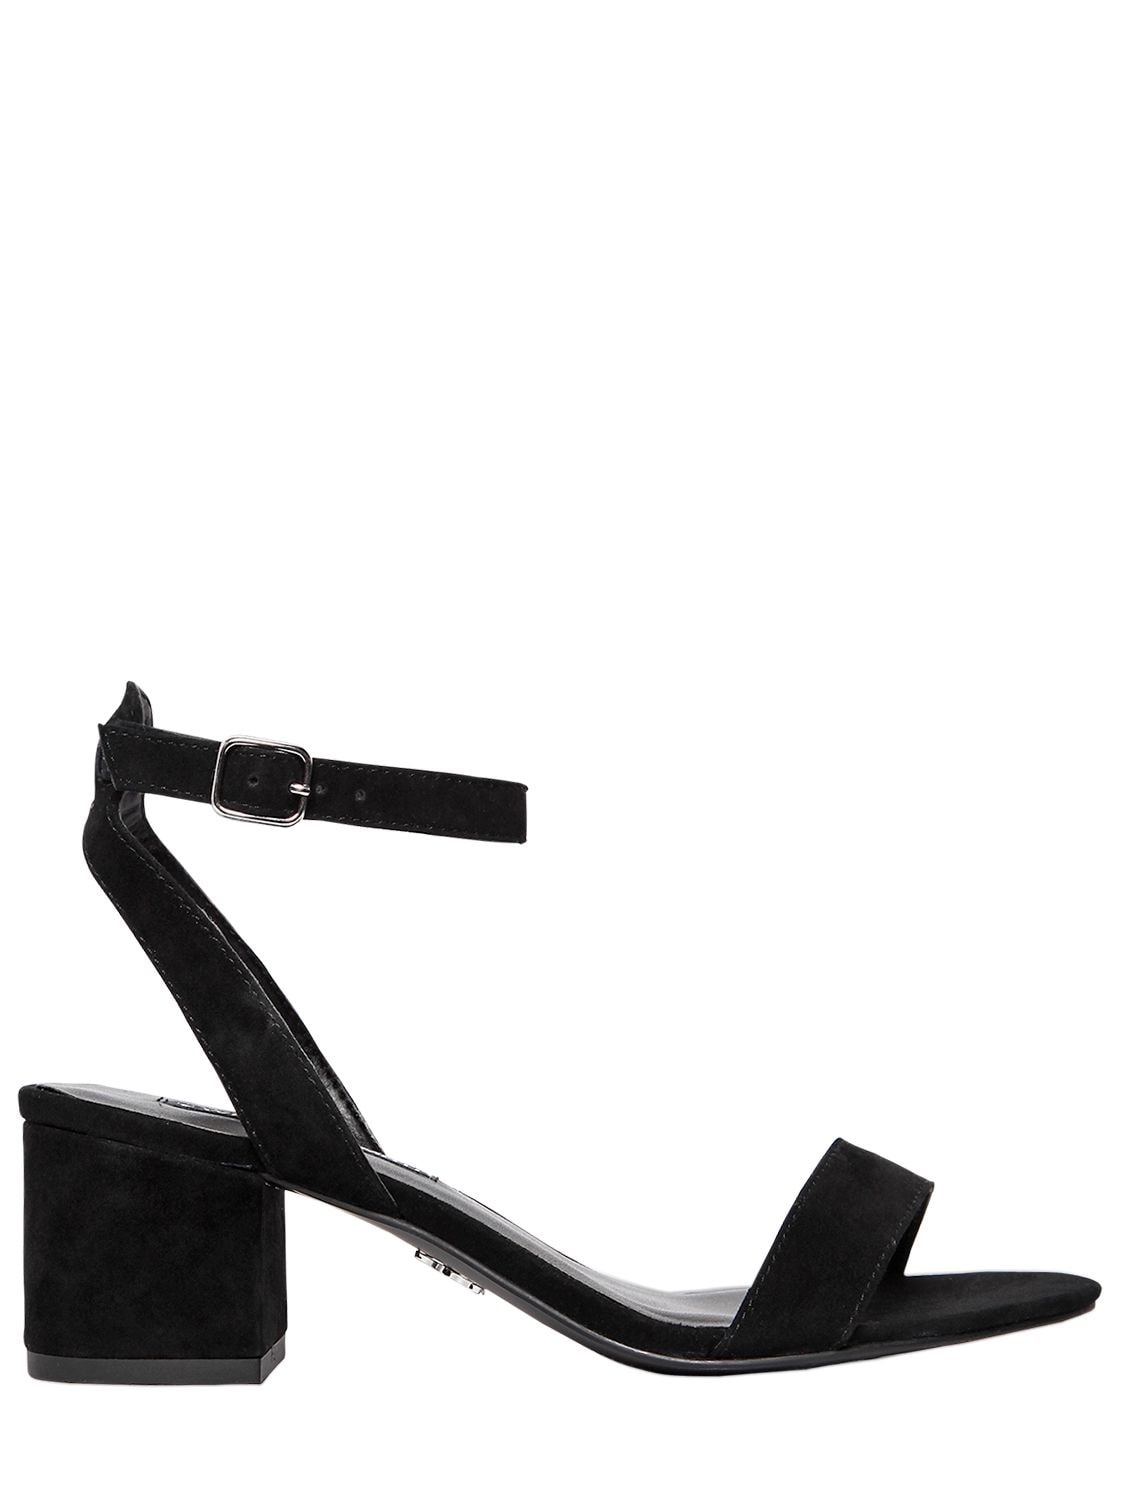 Windsor Smith 60mm Melani Suede Sandals In Black